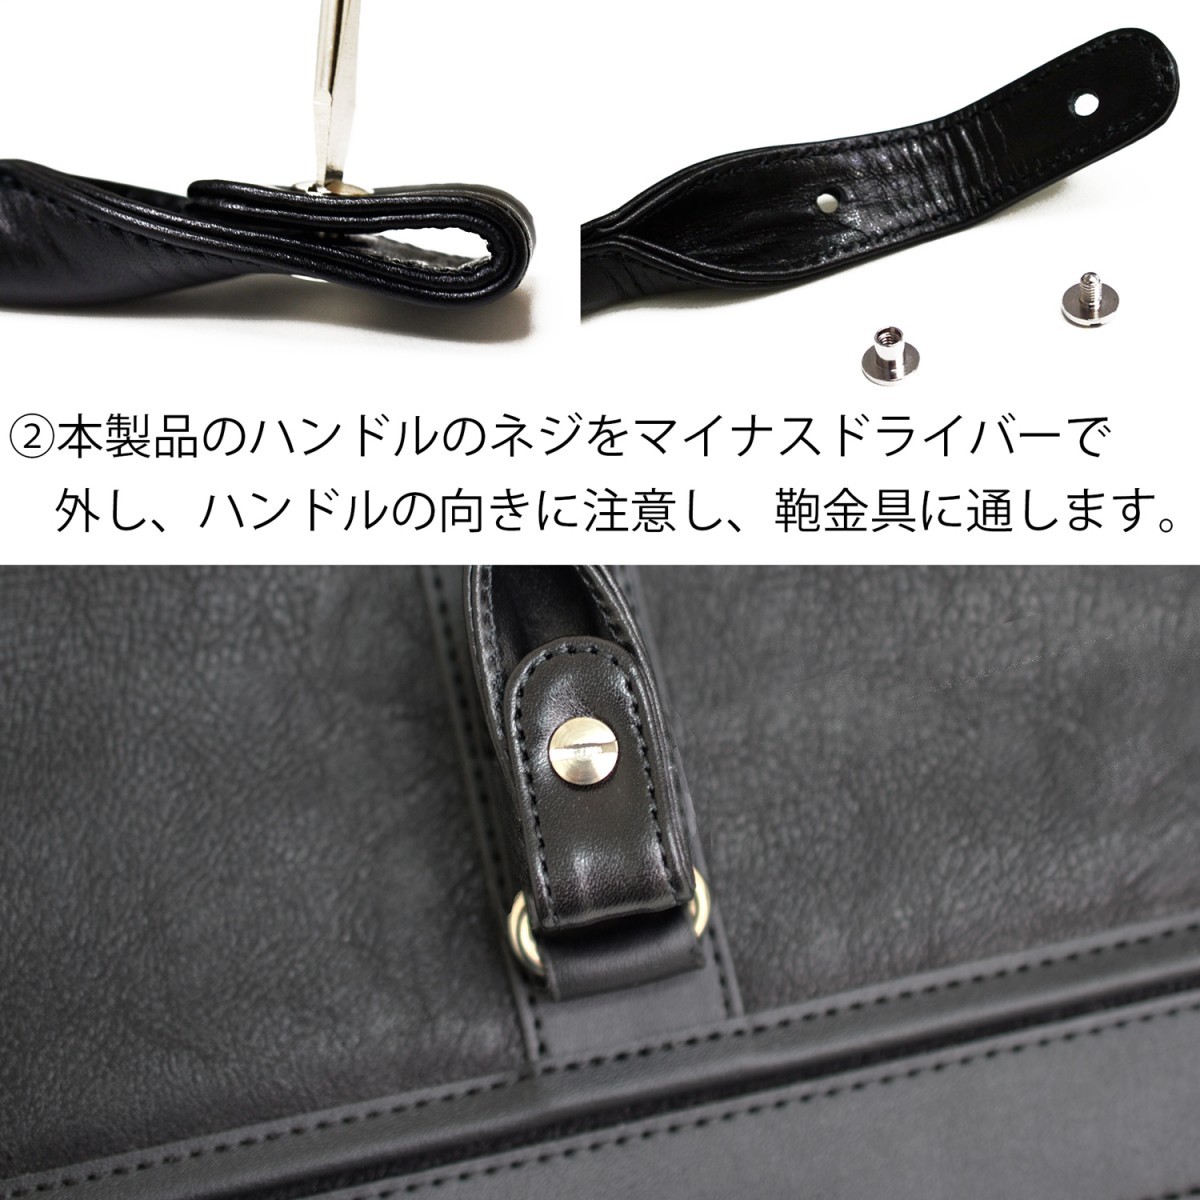  портфель держать рука натуральная кожа замена руль для сделано в Японии ремонт HD-H153